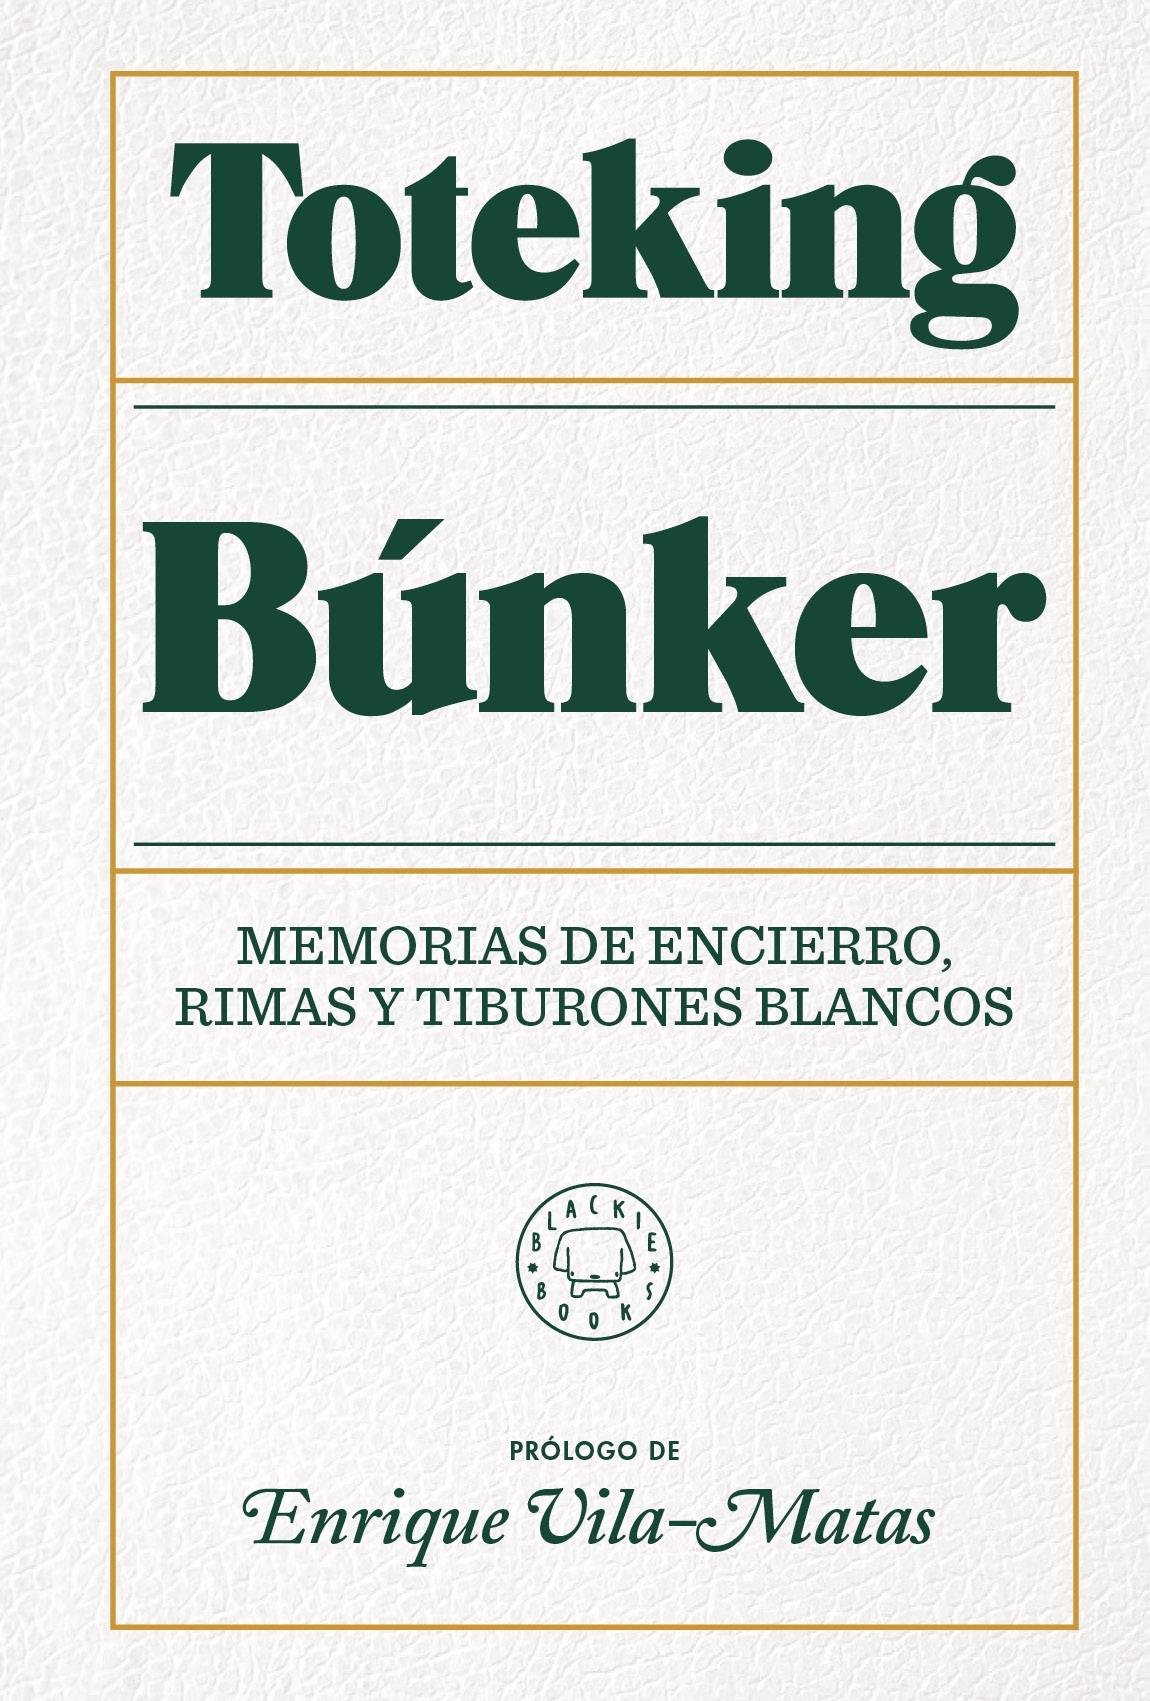 Búnker (Edición limitada con cubierta de piel) "Memorias de encierro, rimas y tiburones blancos.". 